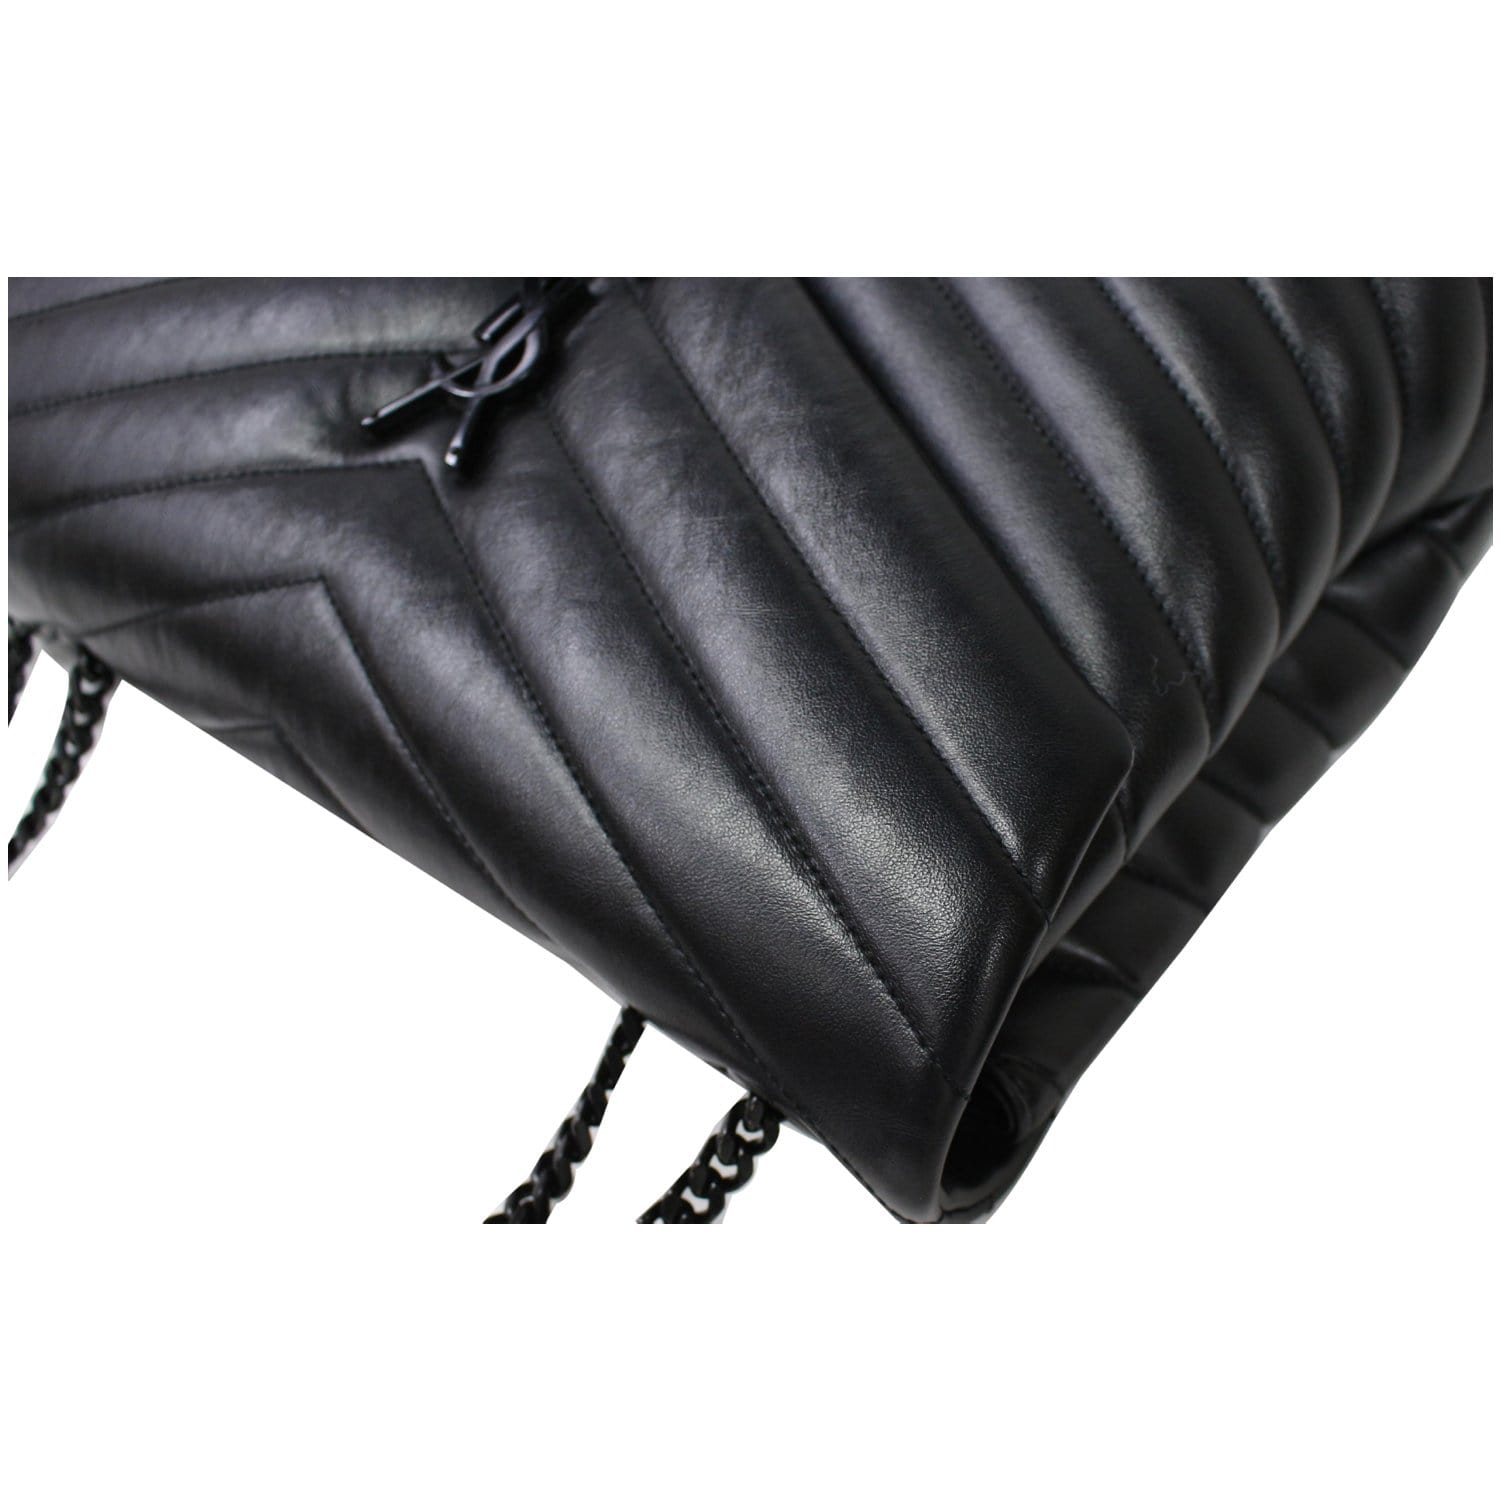 Saint Laurent LouLou Toy Shoulder Bag Black in Calfskin Leather